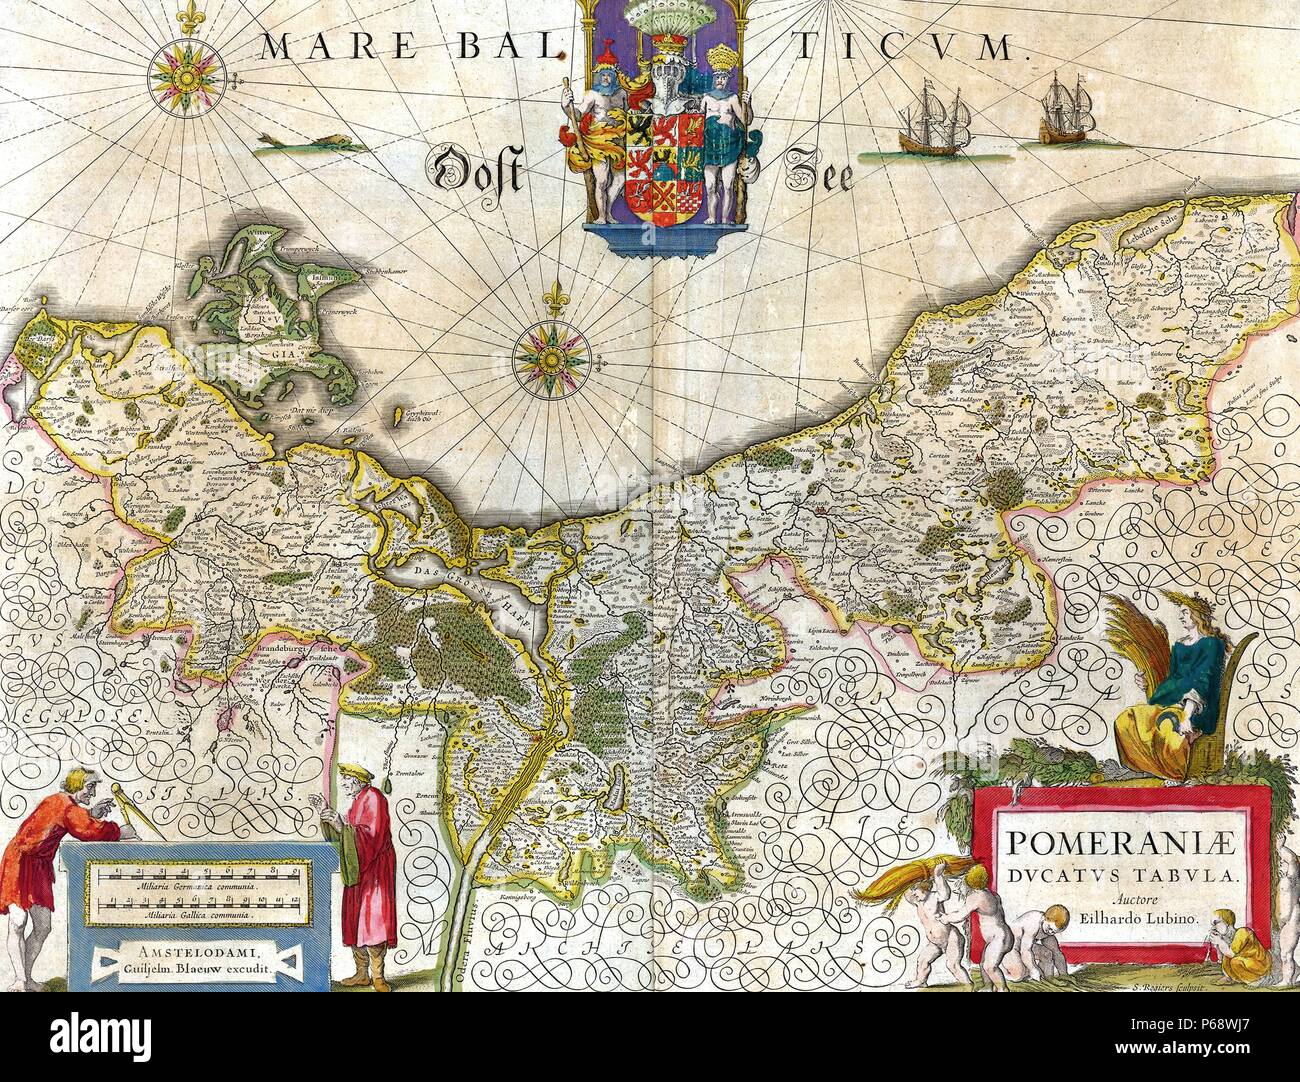 Mappa del centro storico di ducato di Pomerania. Il Ducato di Pomerania del XII secolo - 1637; fu un ducato in Pomerania sulla costa meridionale del Mar Baltico, governata dai Granduchi della casa di Pomerania (grifoni). Datata 1635 Foto Stock